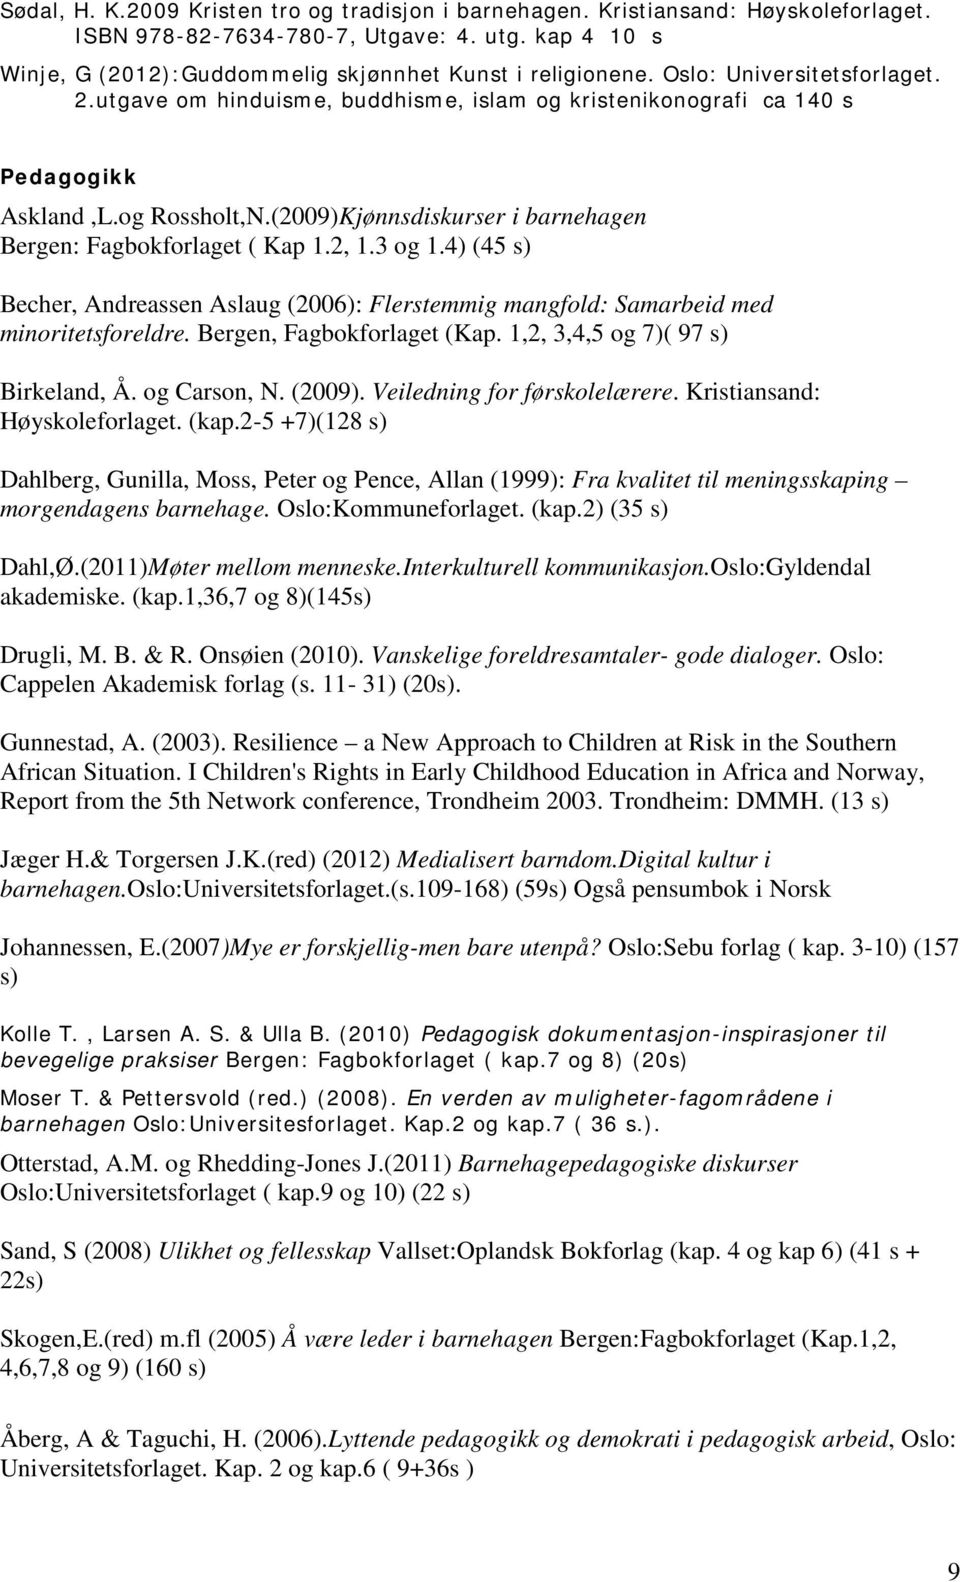 2, 1.3 og 1.4) (45 s) Becher, Andreassen Aslaug (2006): Flerstemmig mangfold: Samarbeid med minoritetsforeldre. Bergen, Fagbokforlaget (Kap. 1,2, 3,4,5 og 7)( 97 s) Birkeland, Å. og Carson, N. (2009).